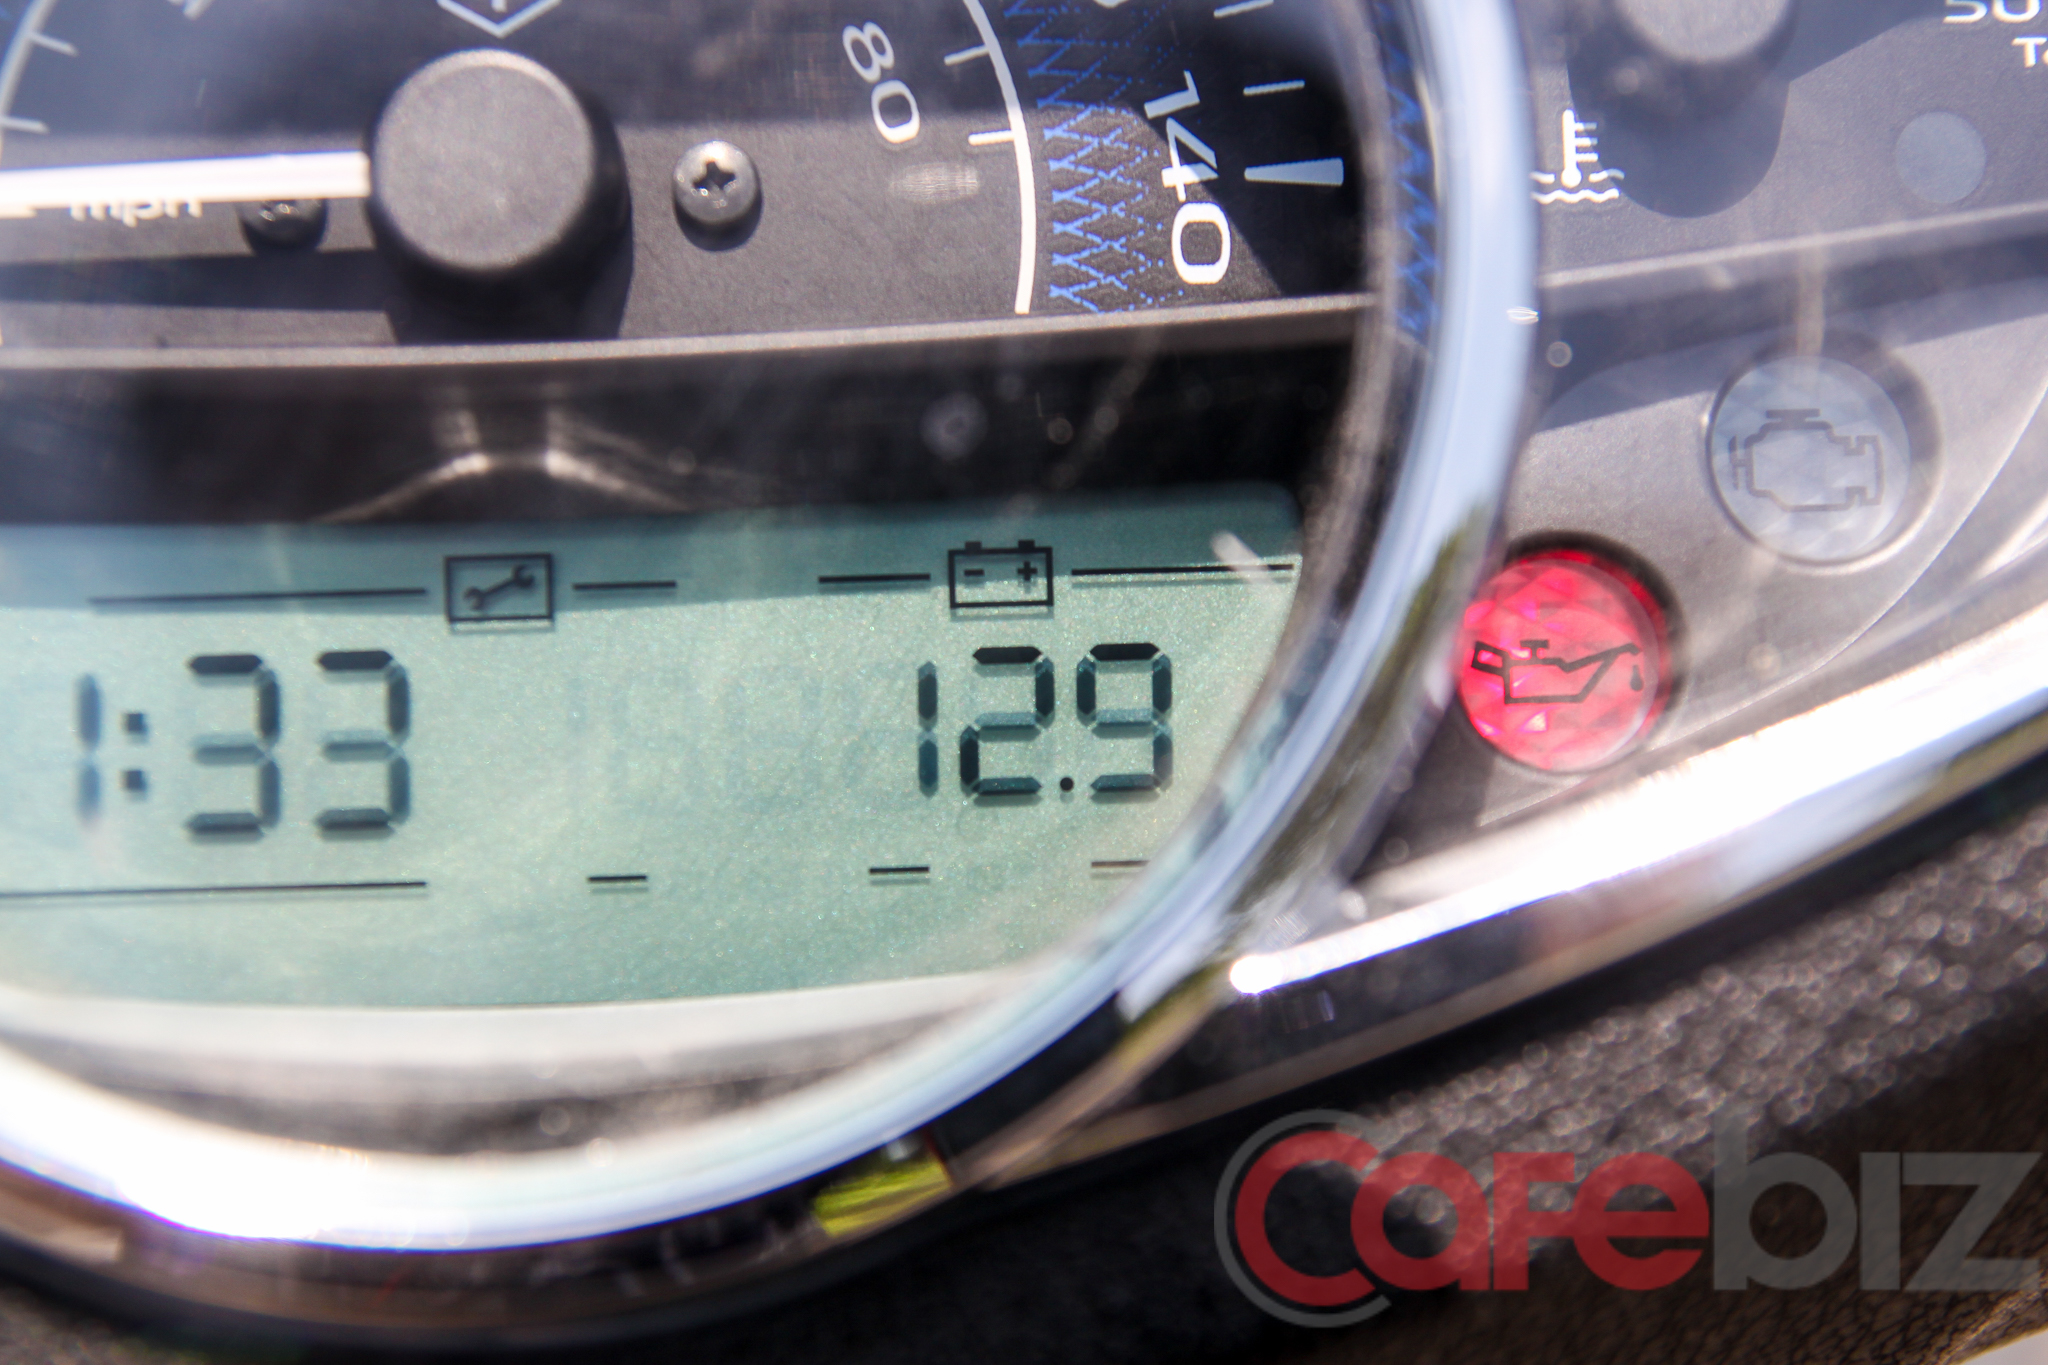 
Phần đồng hồ điện tử của Medley cũng có khả năng hiển thị thú vị hơn với các thông số: hiệu điện thế ắc quy, nhiệt độ ngoài trời, các quãng đường đi được.
